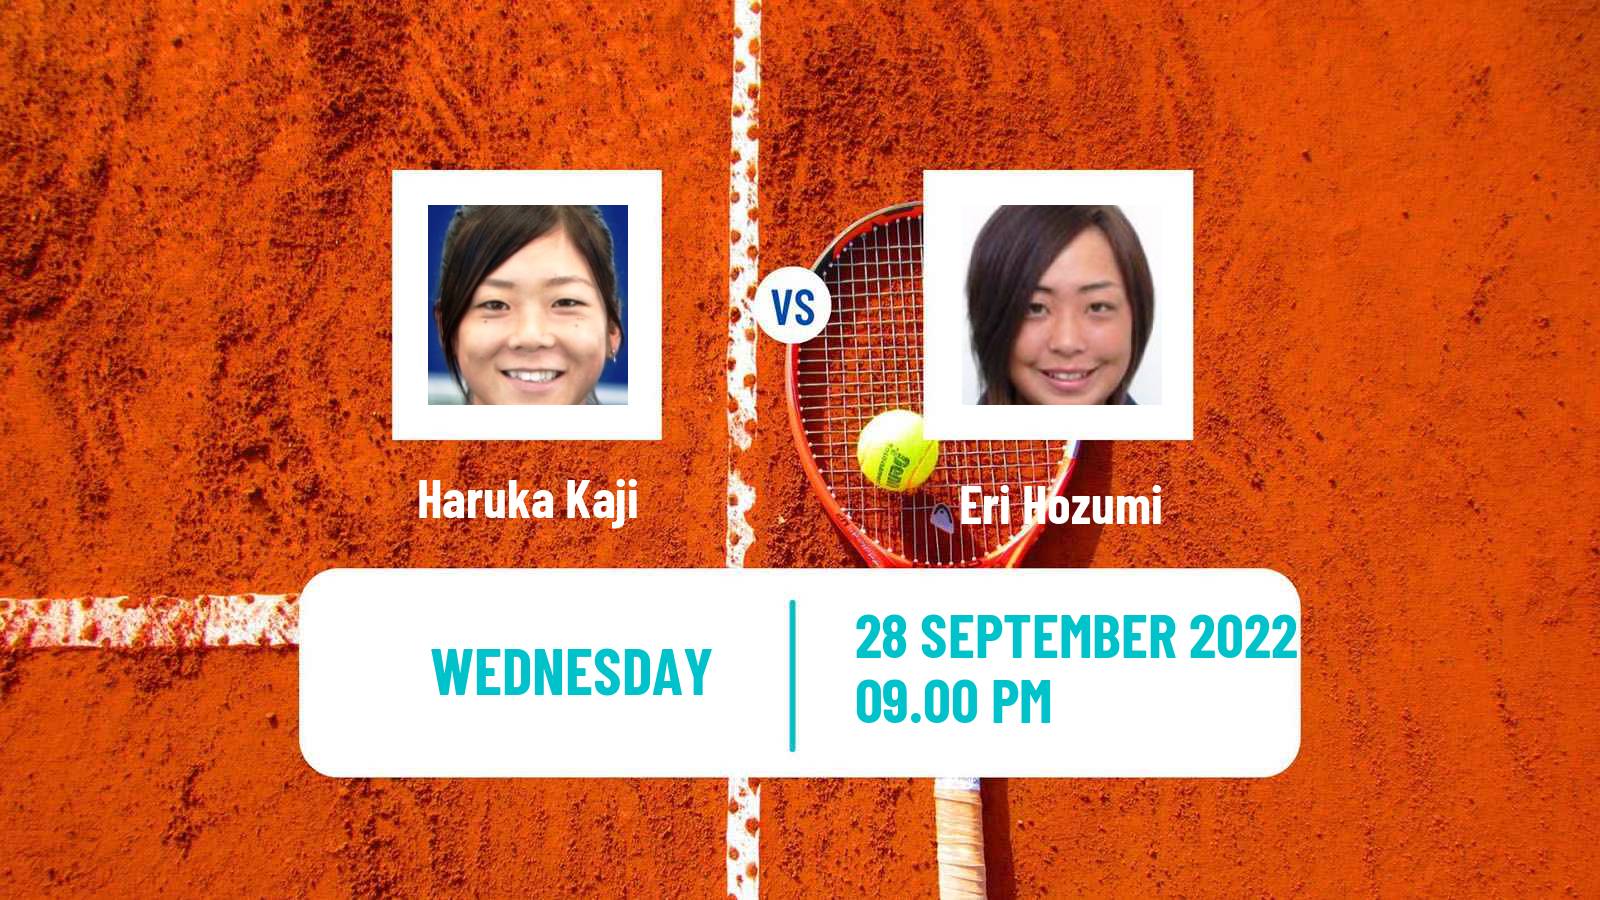 Tennis ITF Tournaments Haruka Kaji - Eri Hozumi